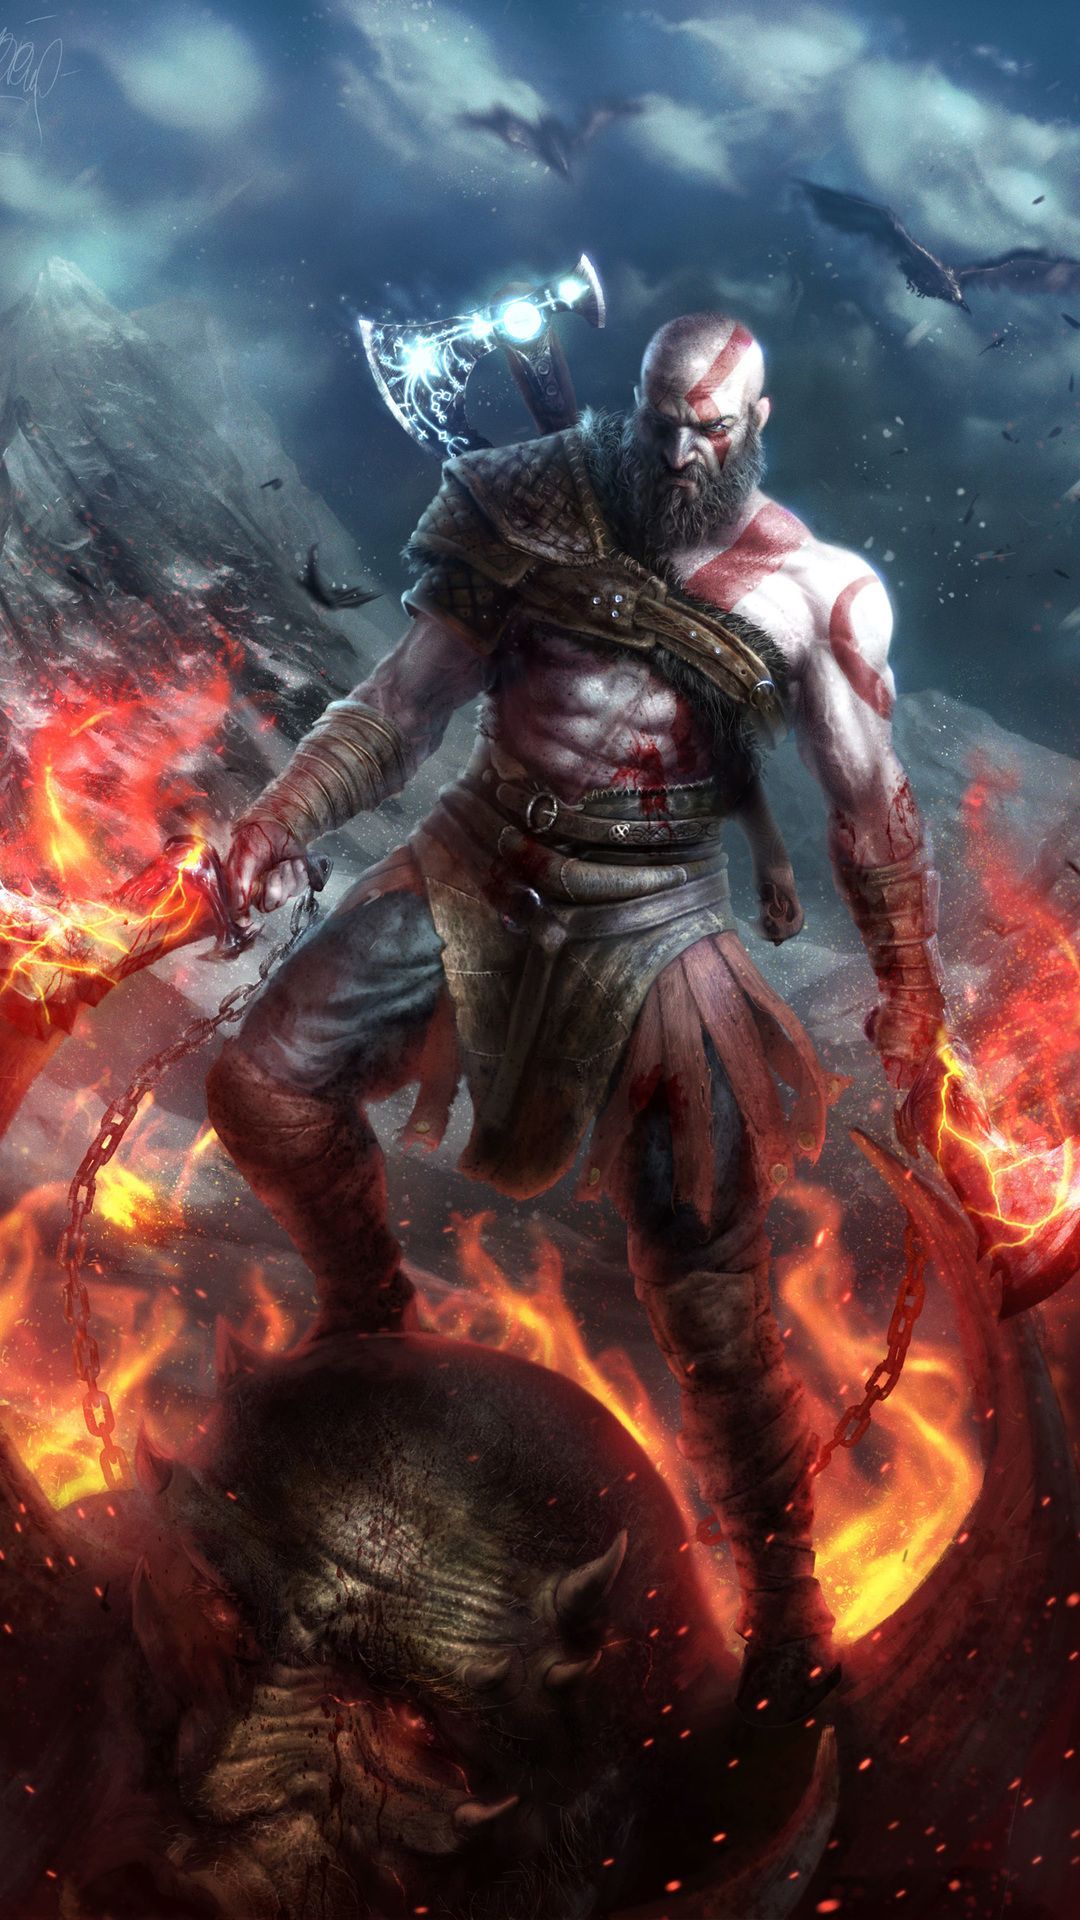 God of War Kratos Wallpaper by VishalKumar07 on DeviantArt